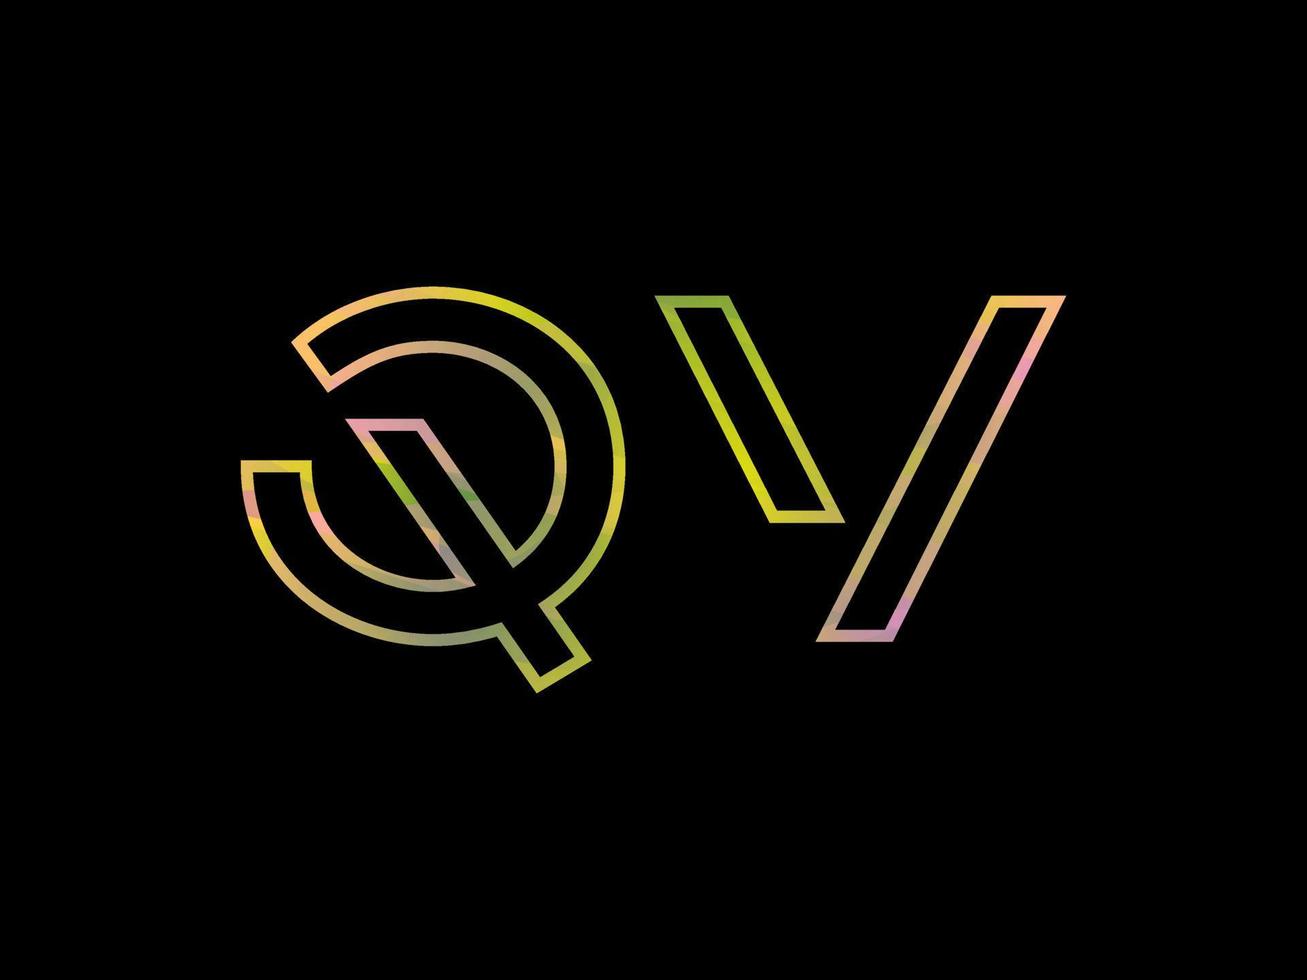 qv-Buchstabenlogo mit buntem Regenbogenbeschaffenheitsvektor. Pro-Vektor. vektor